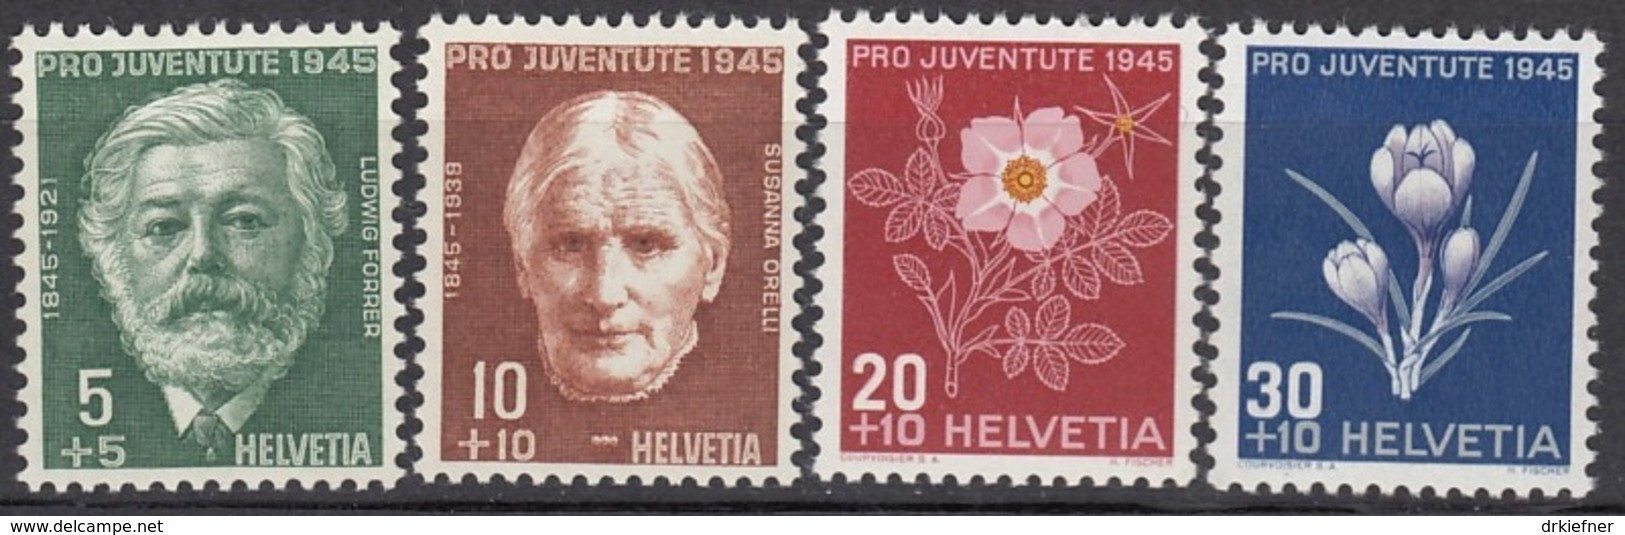 SCHWEIZ  465-468,  Postfrisch **, Pro Juventute 1945, Alpenblumen - Ungebraucht